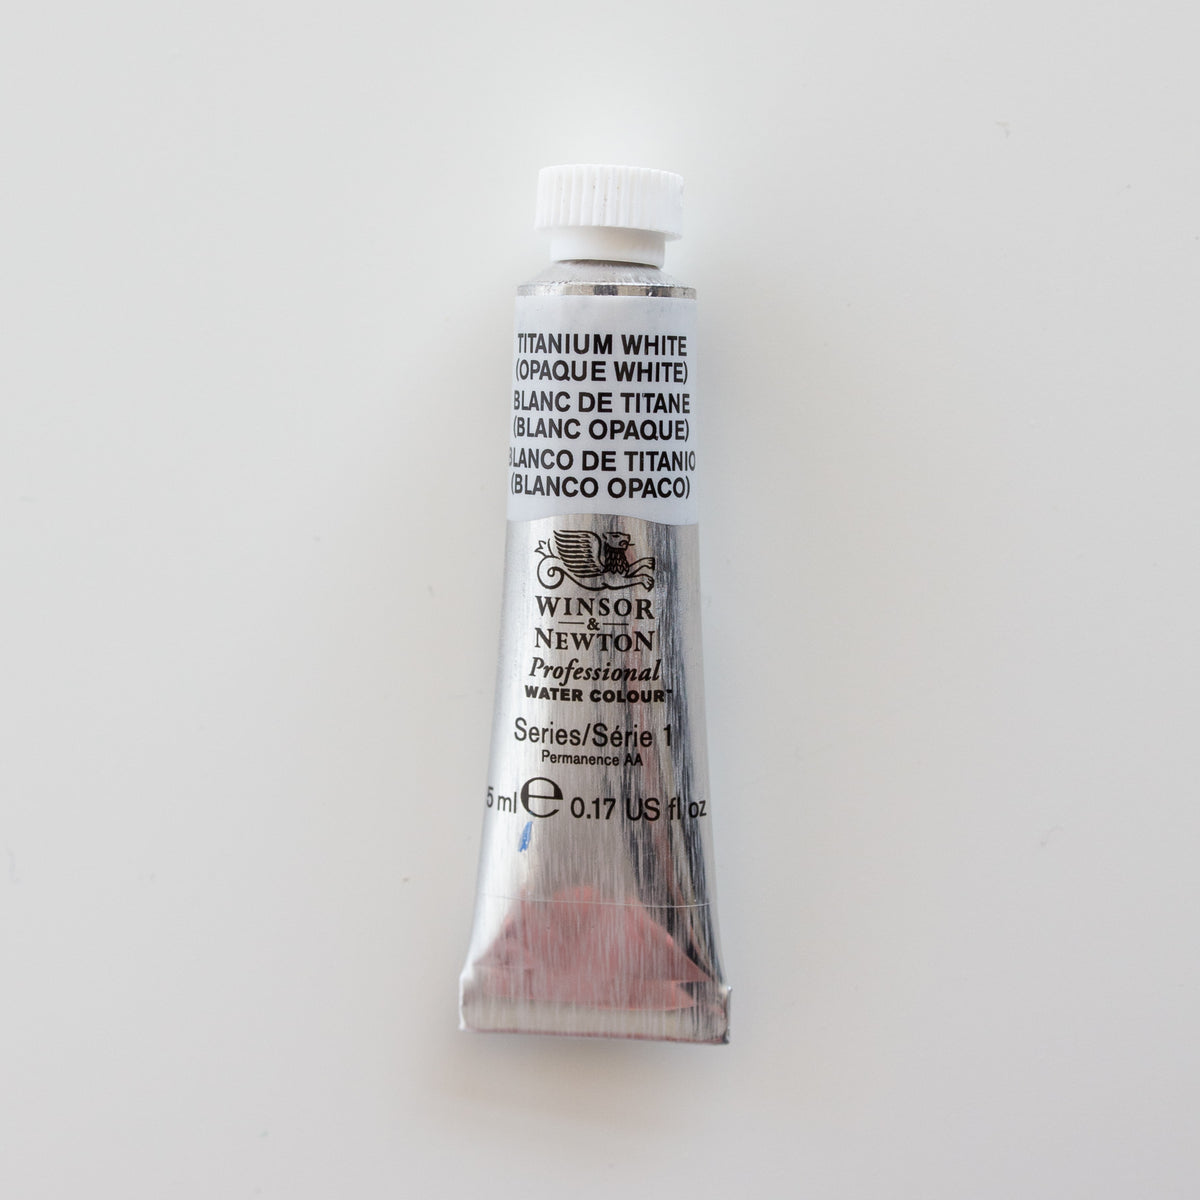 Winsor & Newton Professional Water Colours 5ml Titanium White (opaque white) 1